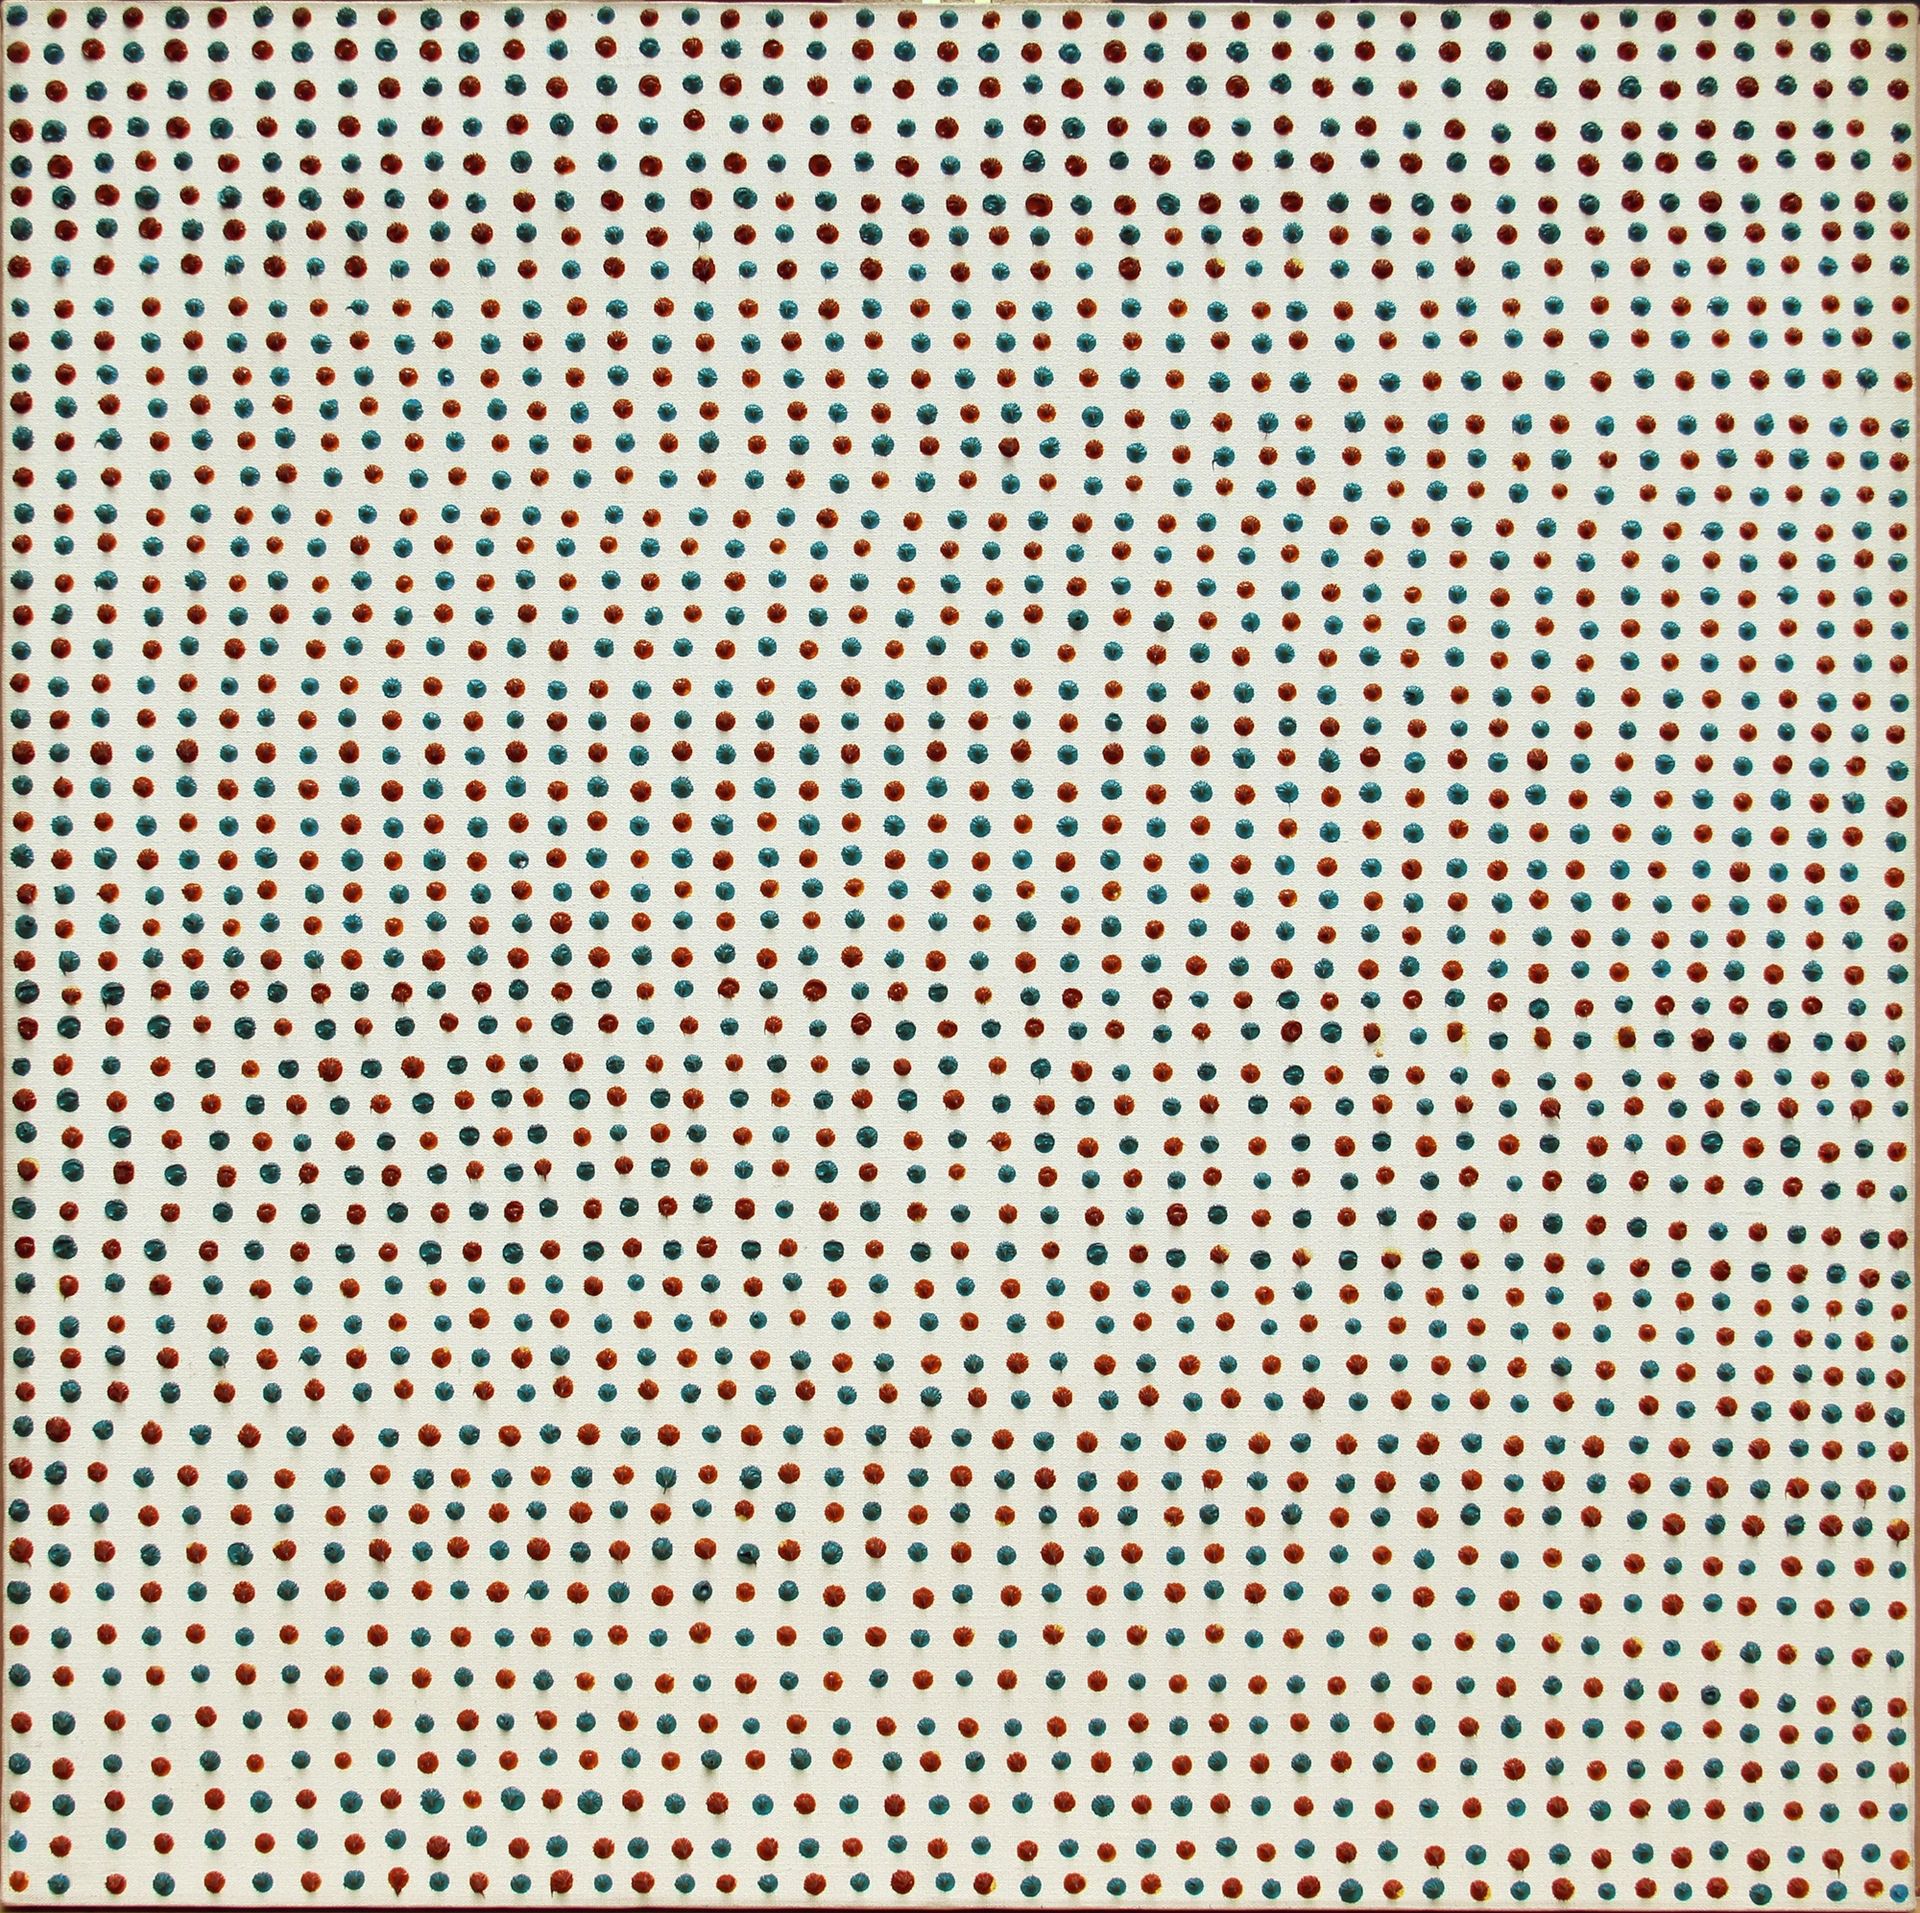 Franco BEMPORAD 2392 Punti 1975, oil on canvas, cm. 90x90



D. Astrologo, E. Bu&hellip;